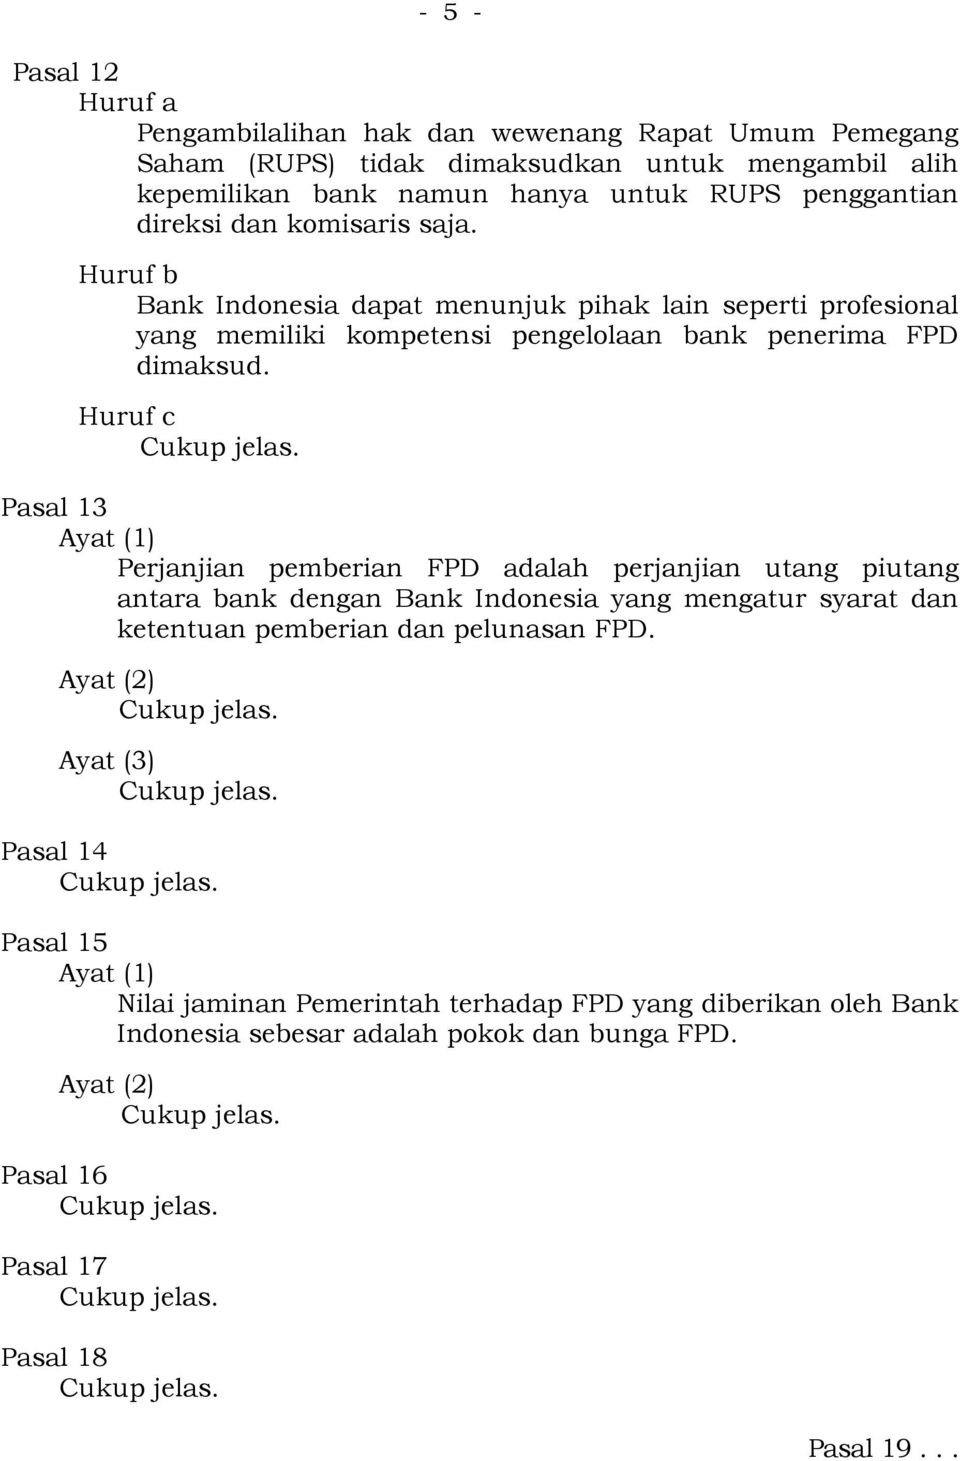 Huruf c Pasal 13 Ayat (1) Perjanjian pemberian FPD adalah perjanjian utang piutang antara bank dengan Bank Indonesia yang mengatur syarat dan ketentuan pemberian dan pelunasan FPD.